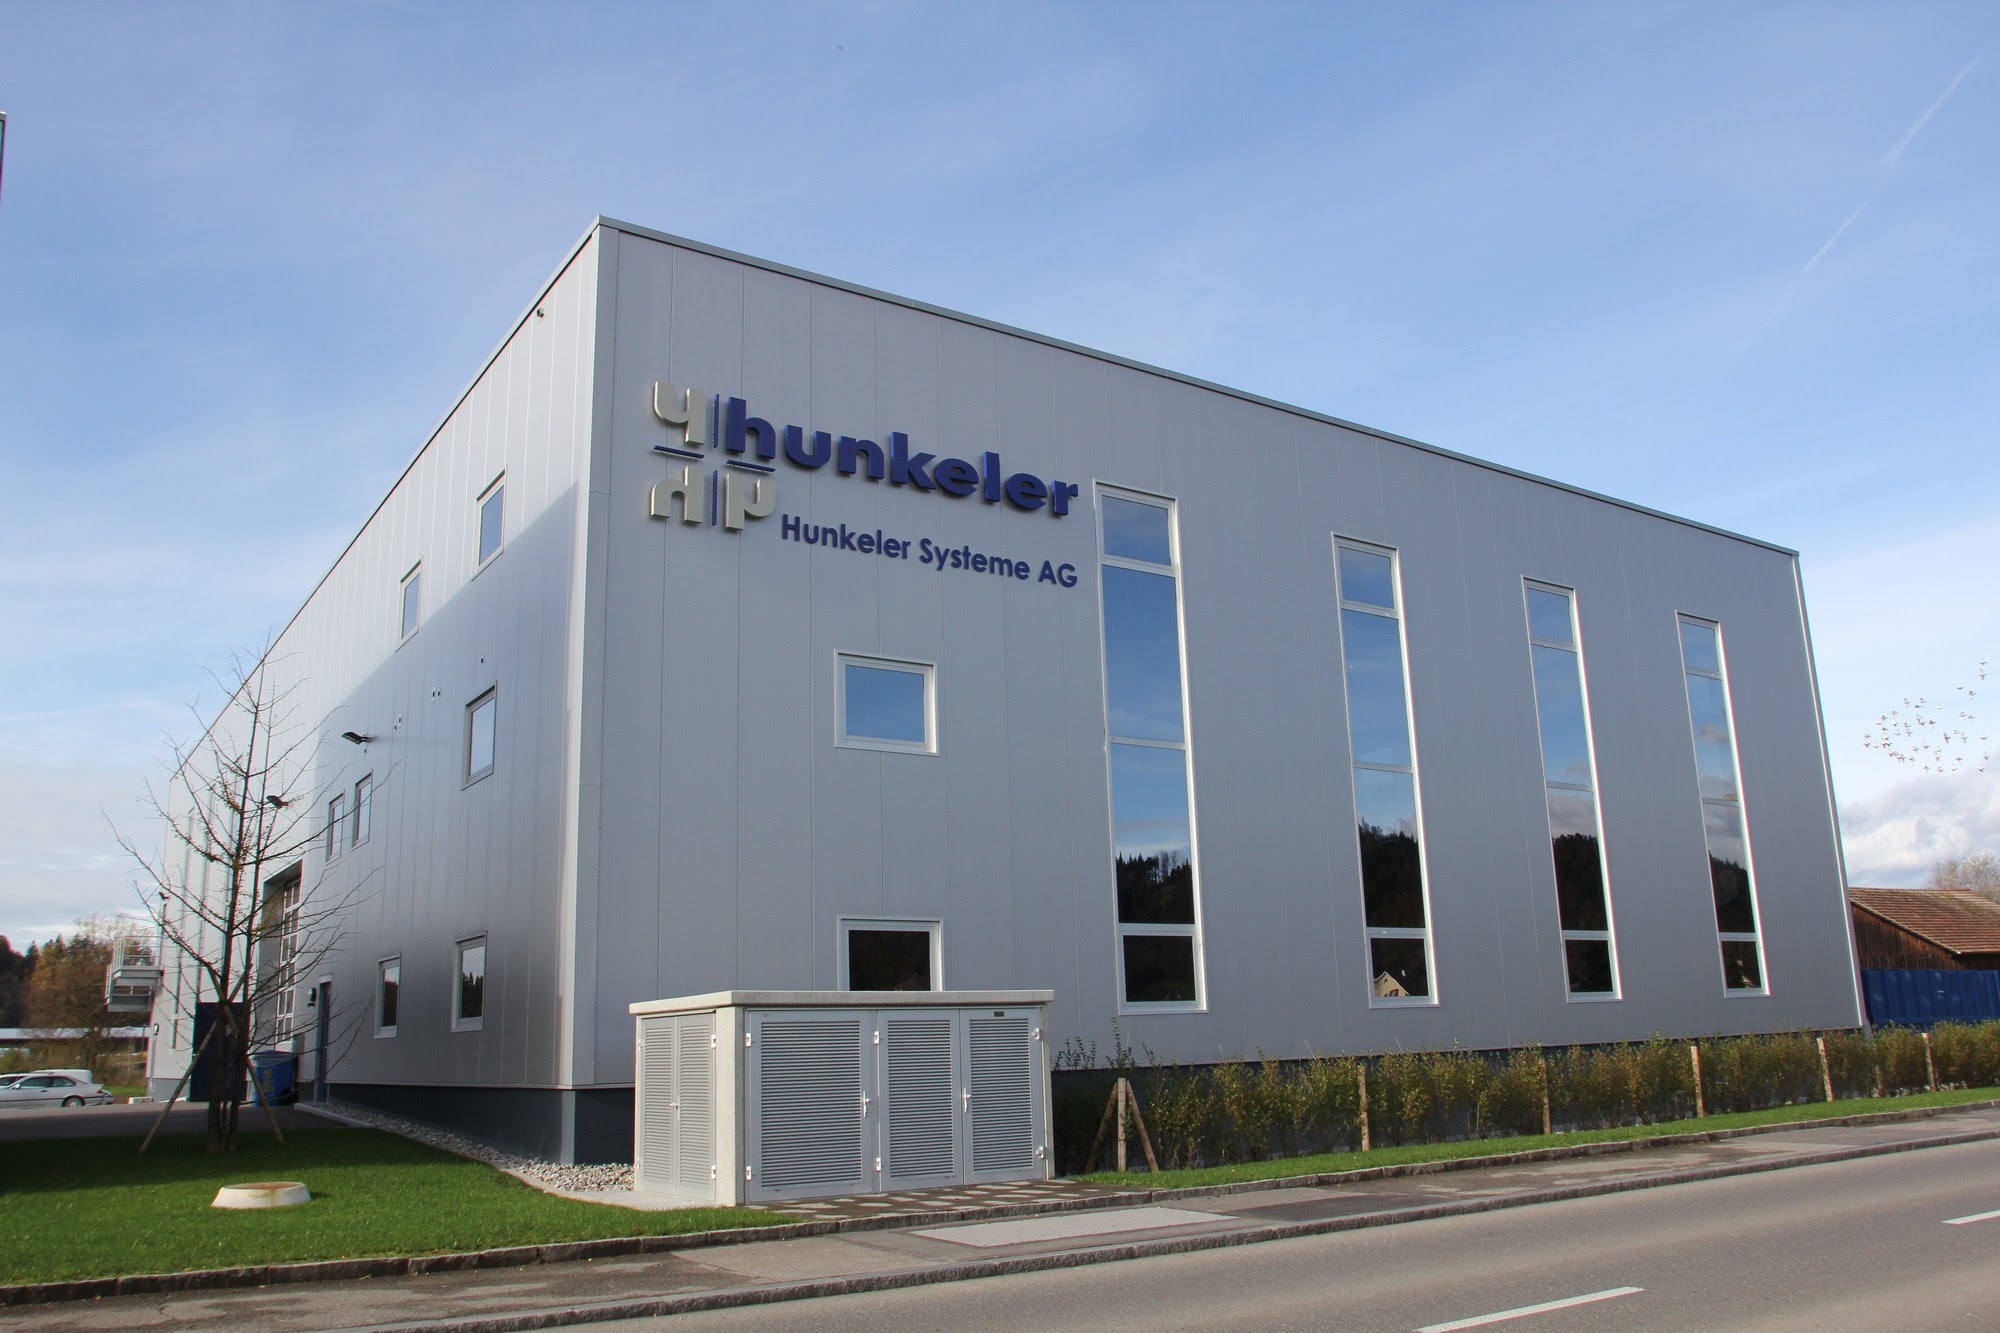 Industrie / Gewerbebau Erweiterung Hunkeler Systeme AG